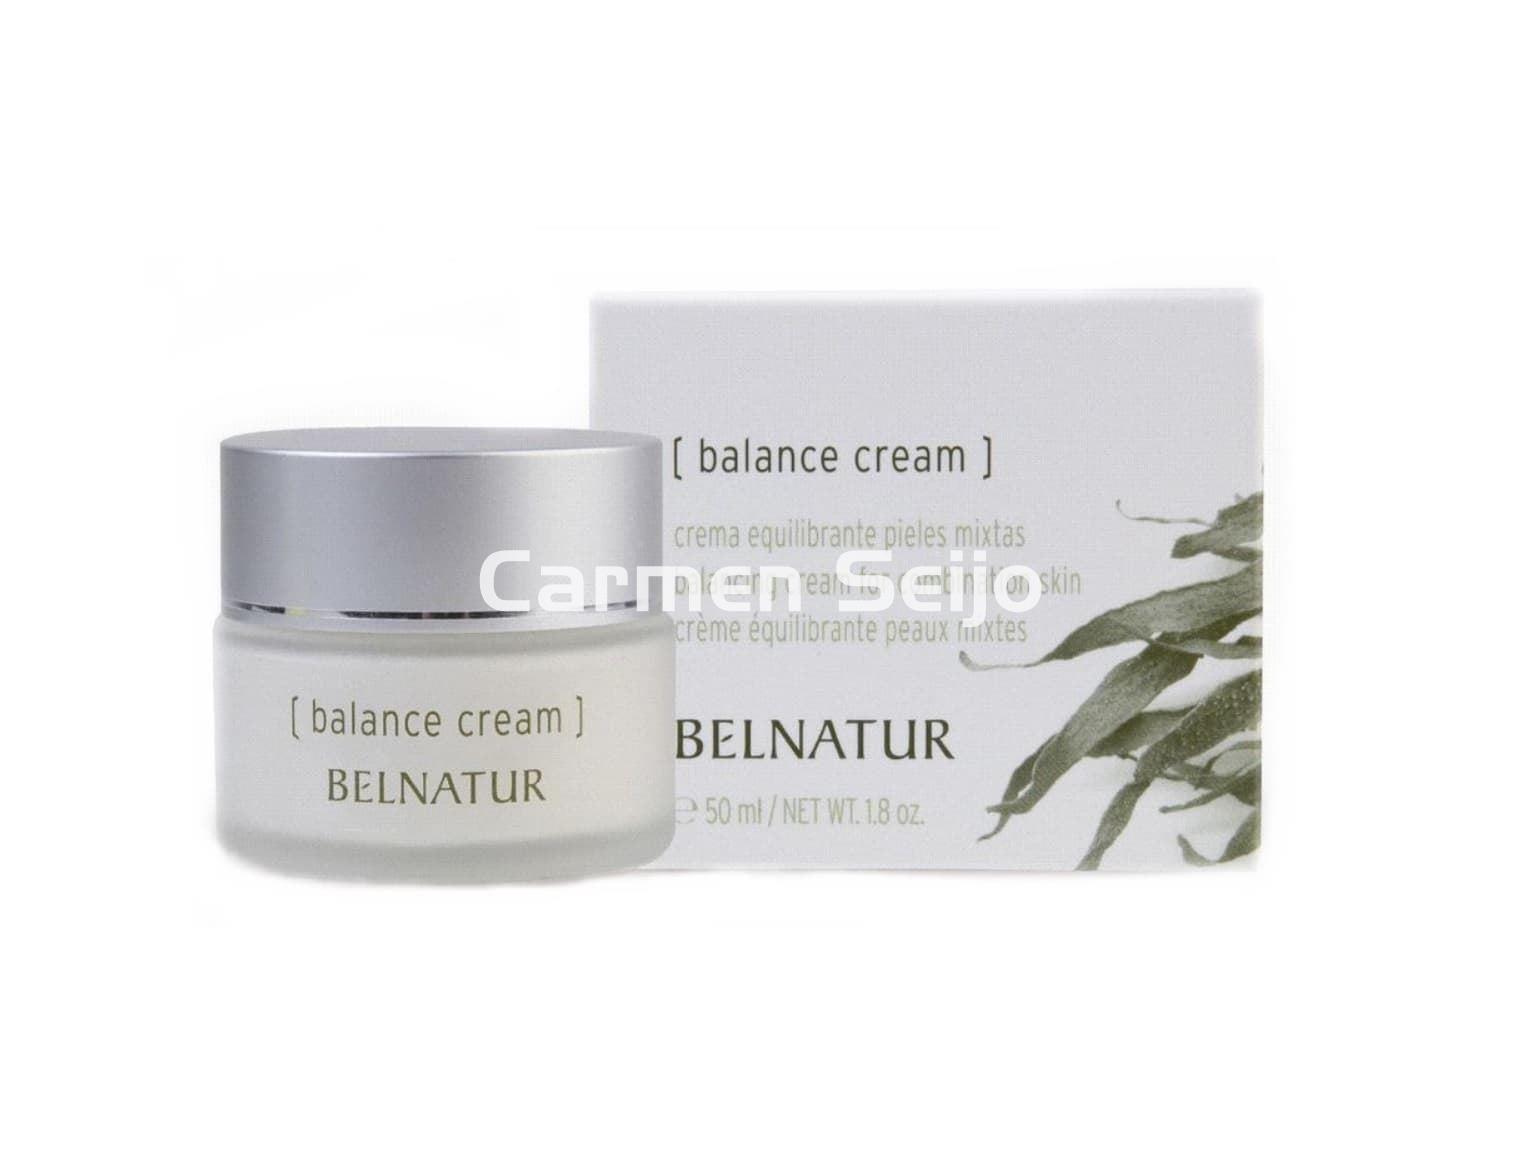 Belnatur Crema Equilibrante Balance Cream - Imagen 1